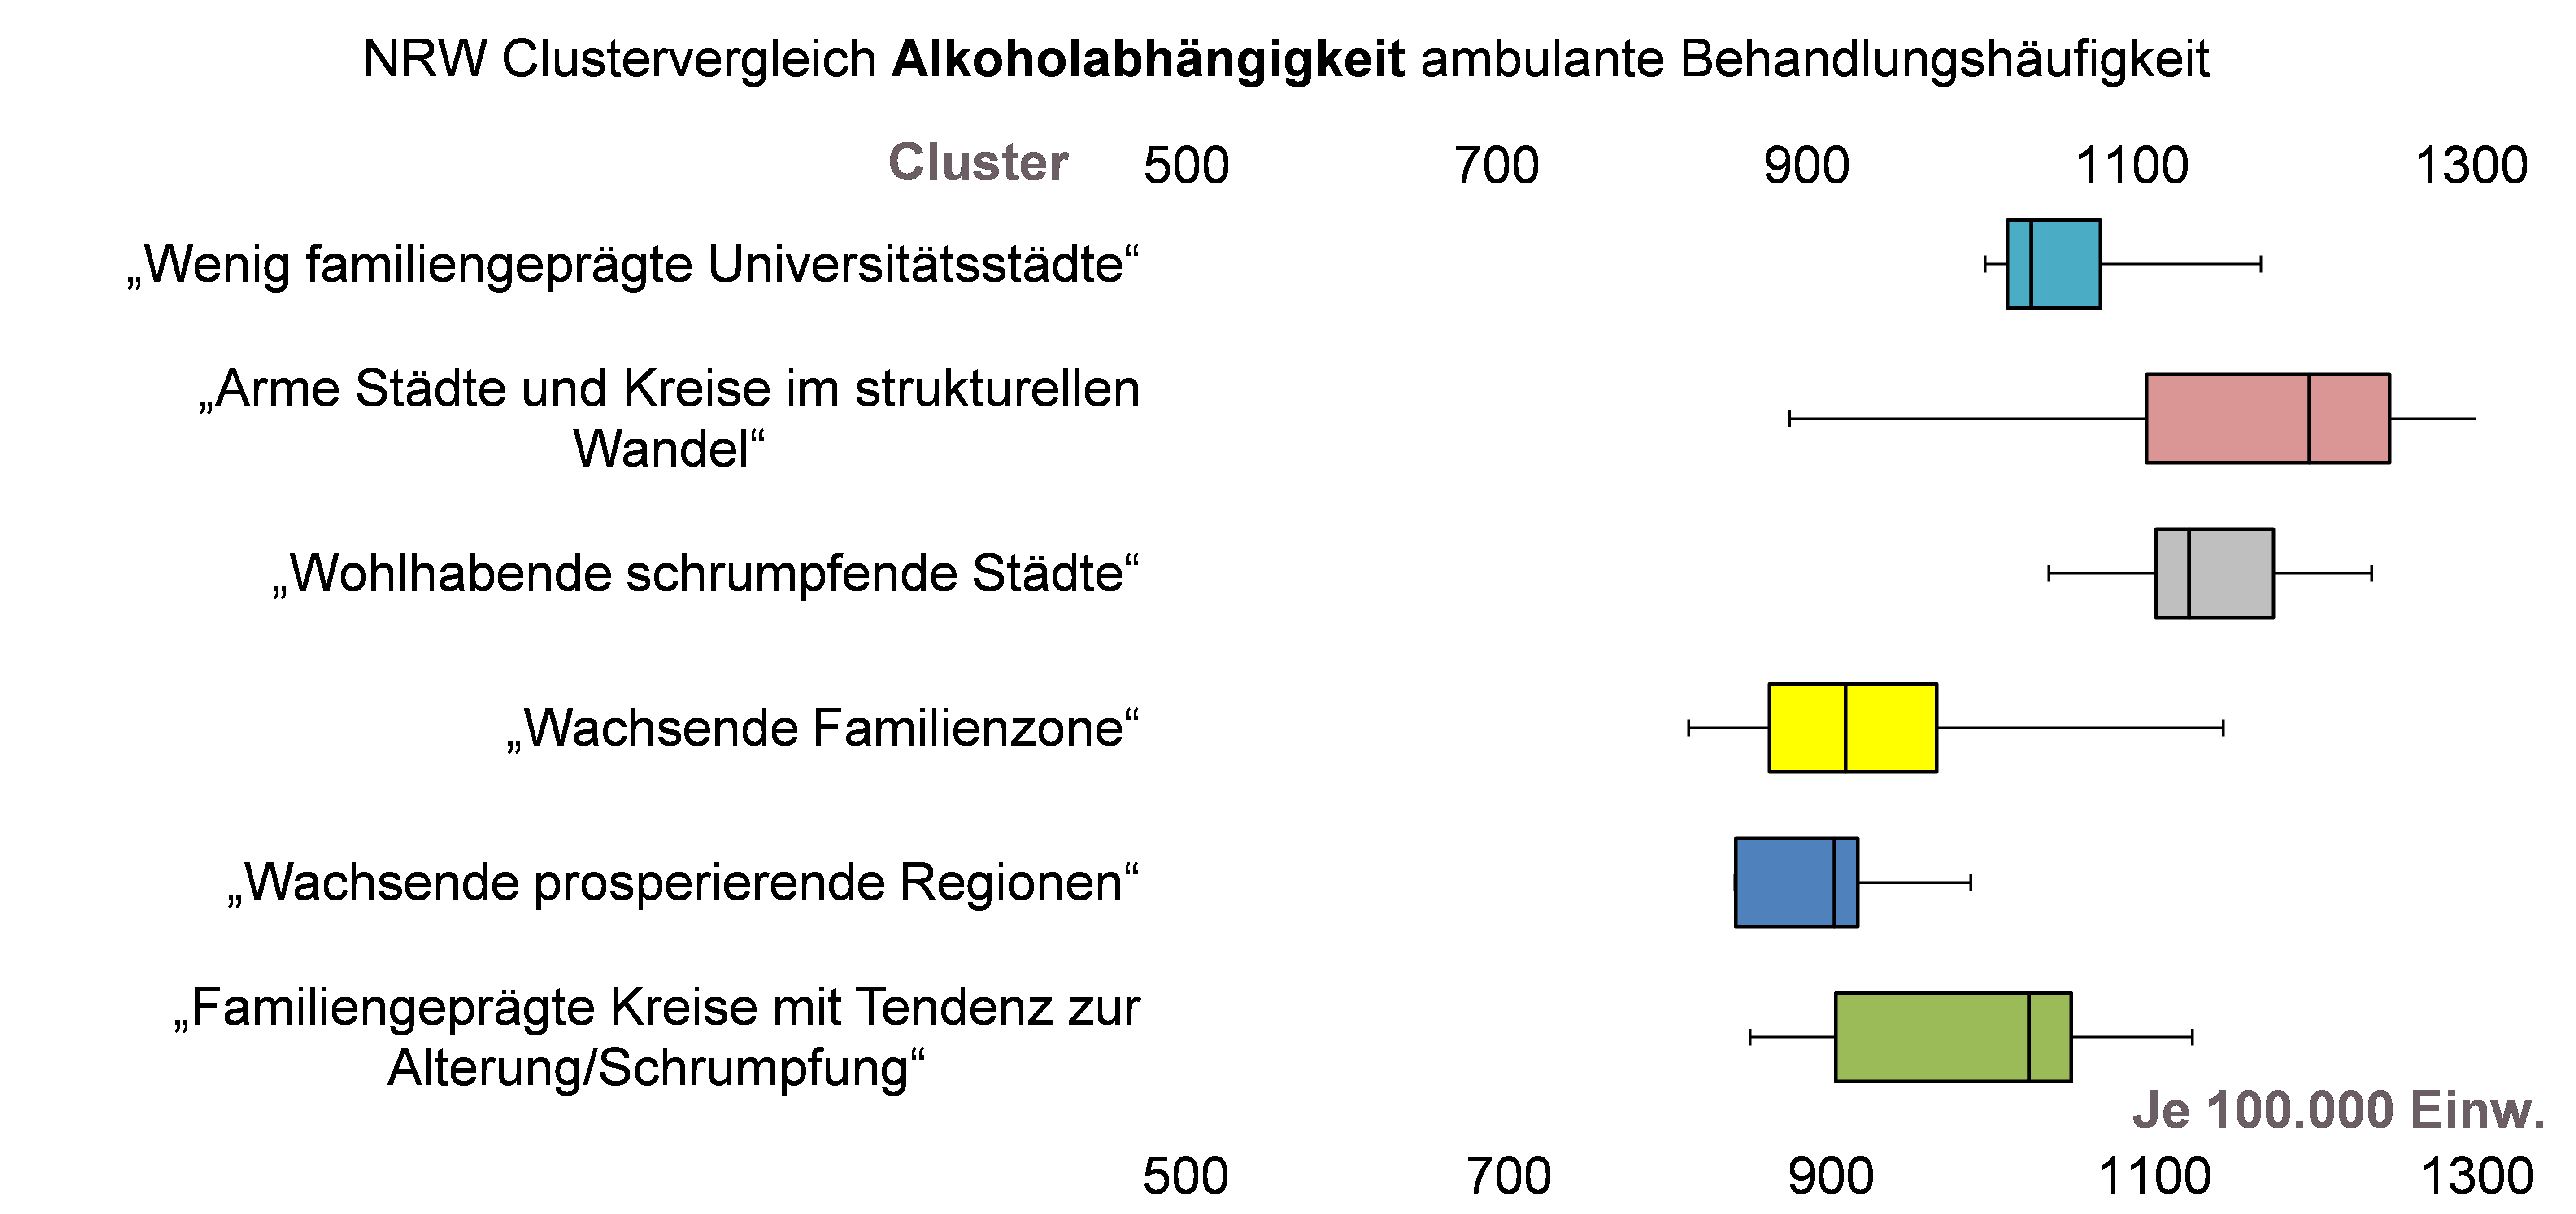 Boxplot-Grafik zur Spannweite der ambulanten Behandlungshäufigkeit aufgrund Alkoholabhängigkeit für 6 verschiedene NRW-Kreiscluster für das Jahr 2015